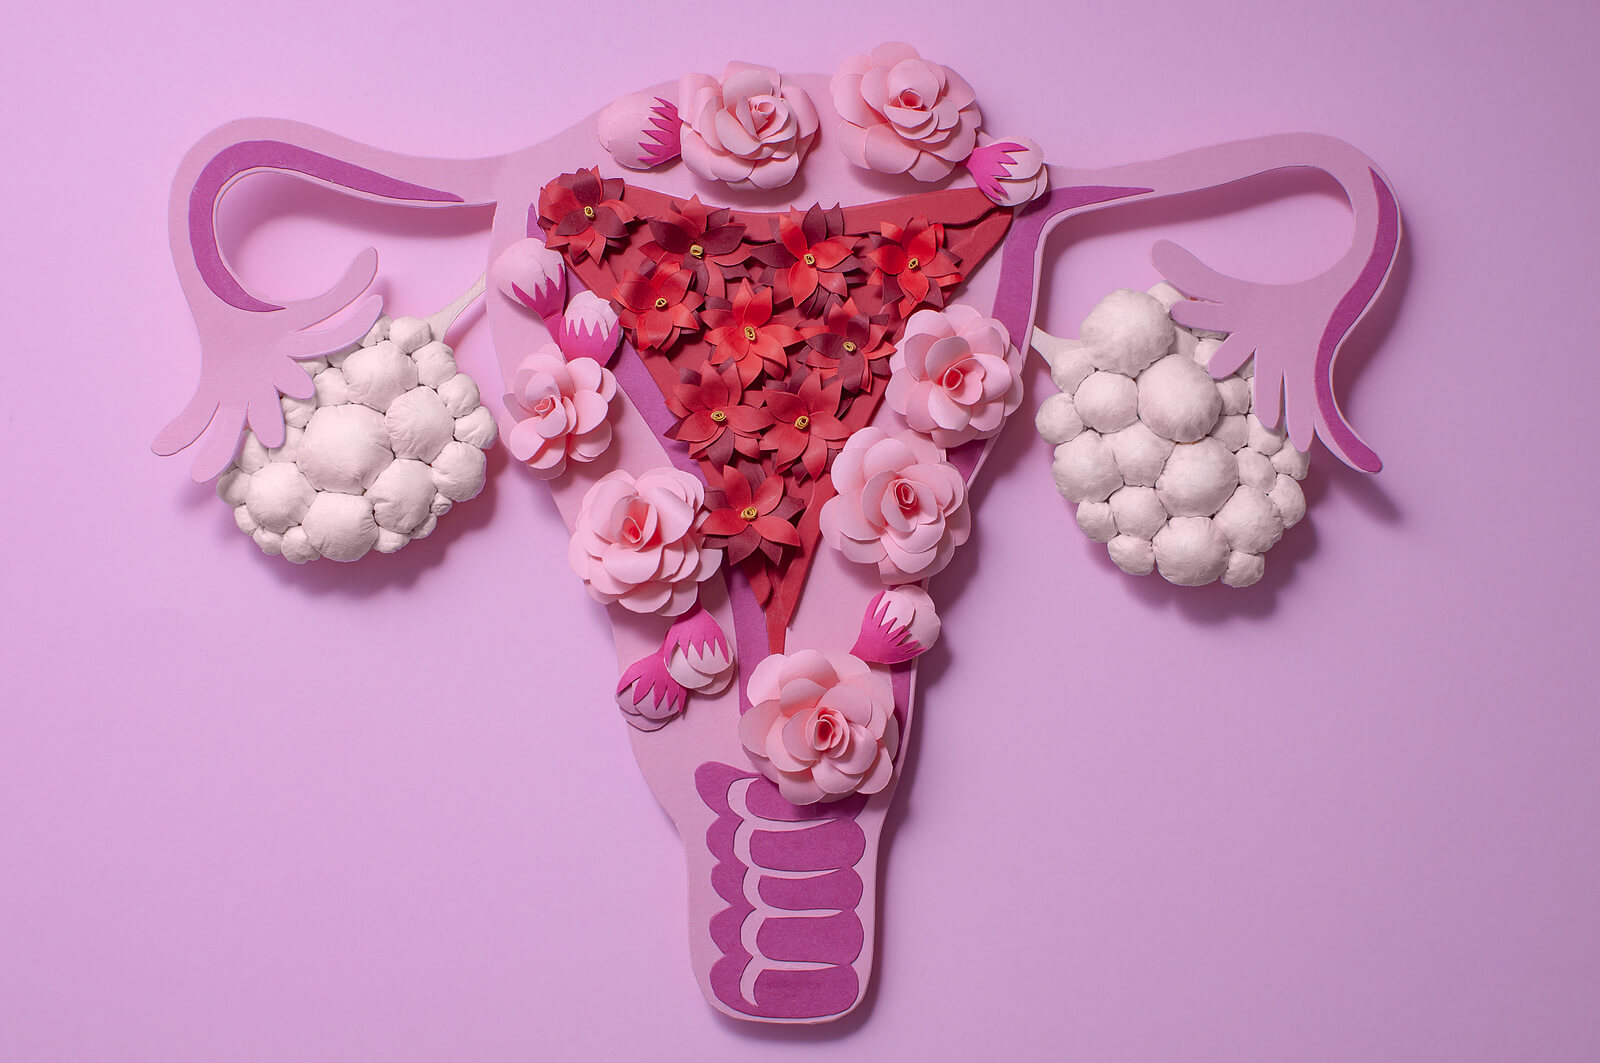 Endometriosis e infertilidad: causas anatómicas y funcionales